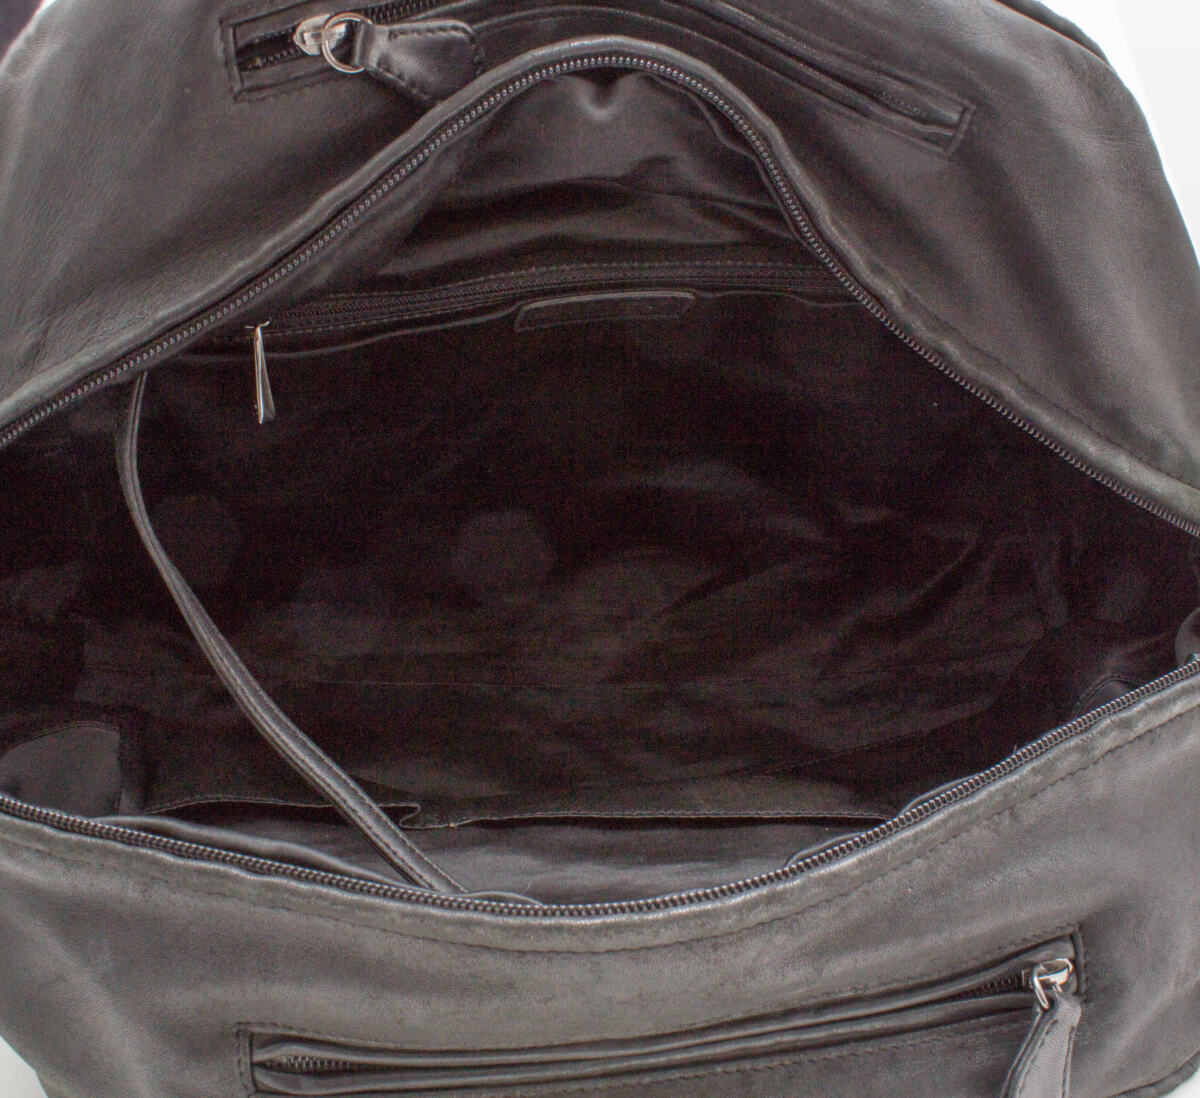 Bolsa Chanel Shopping Bag Preta